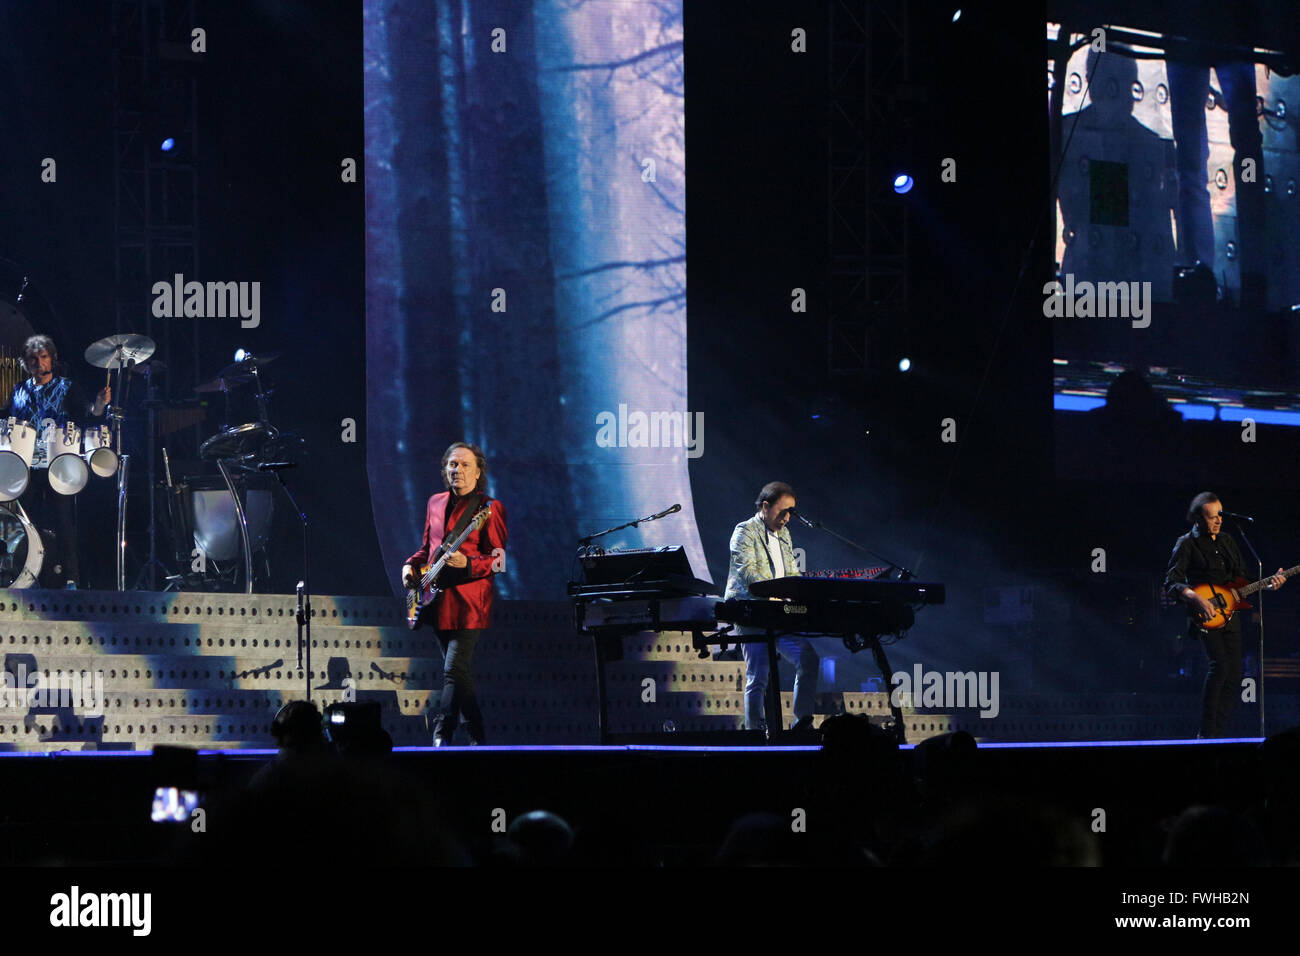 Milan, Italie. Jun 11, 2016. Le groupe de rock italien ourson sur scène à Milan. Credit : Luca Quadrio/Alamy Live News. Banque D'Images